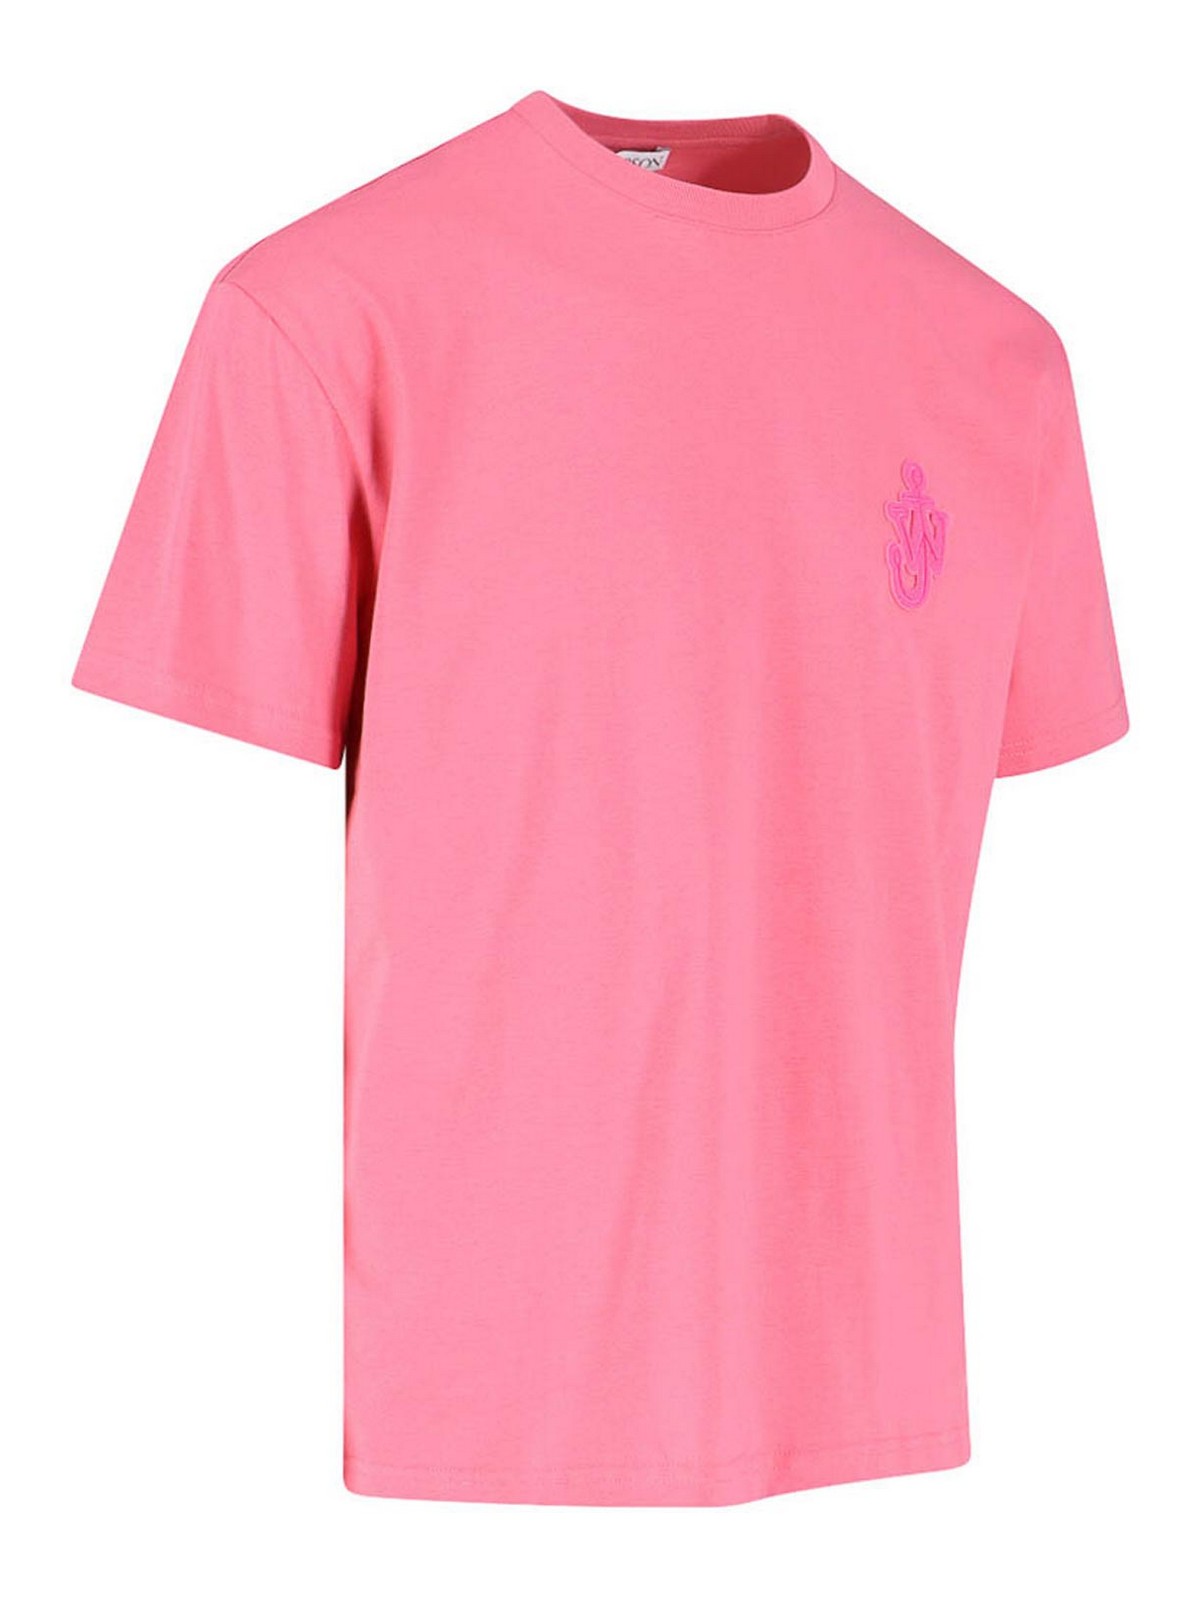 Camisetas J.W. Anderson - Camiseta - Color Carne Y Neutral - JT0186PG0772300